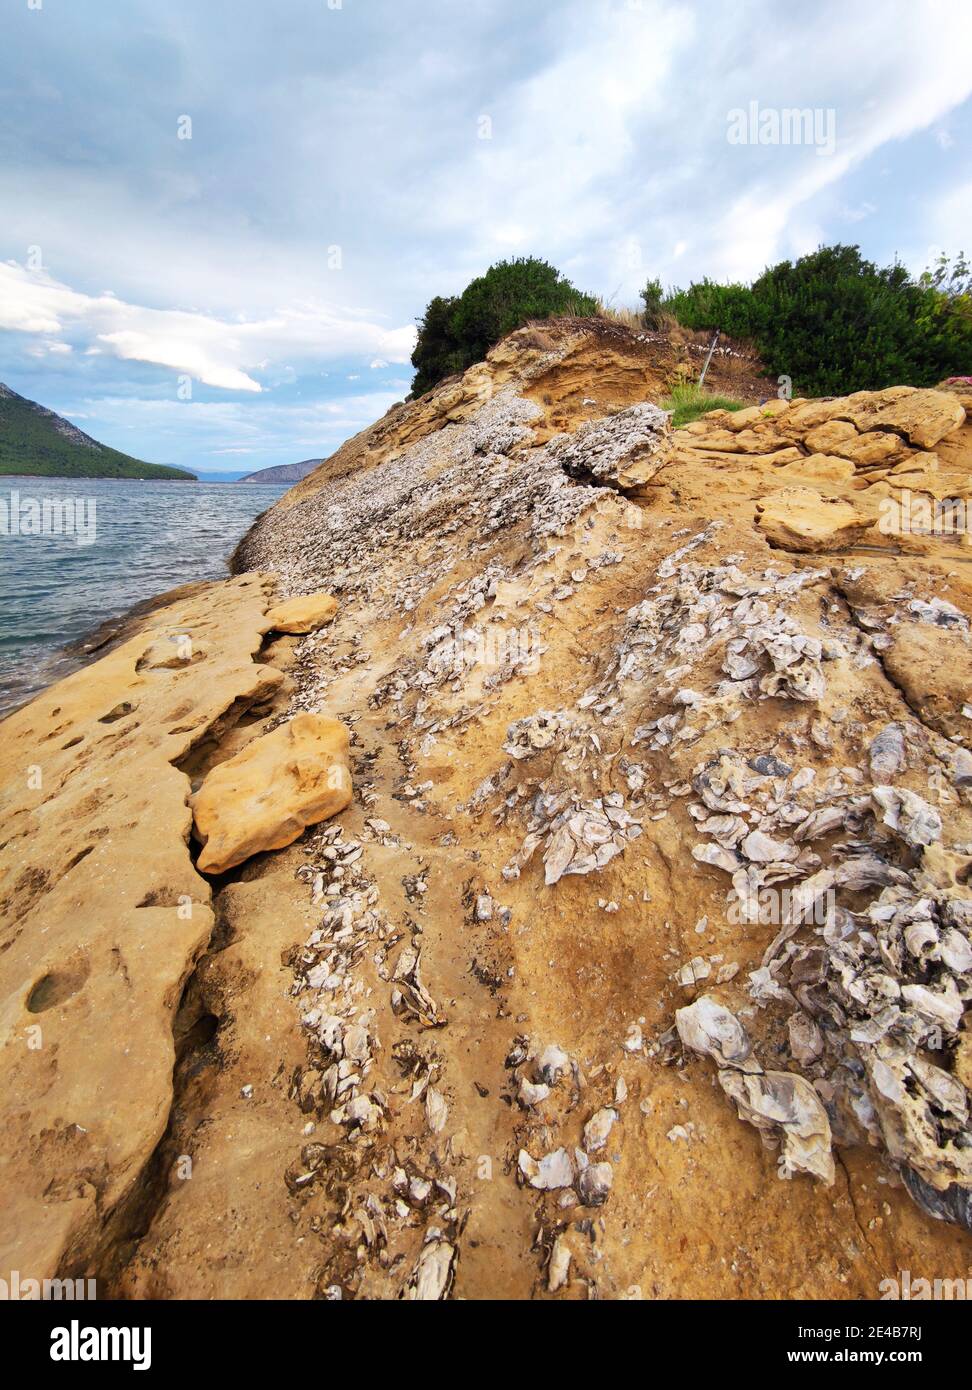 Les falaises de Mitikas sont une caractéristique géologique. Des milliers de coquilles pétrifiées couvrent les roches de grès, la mer Ionienne, le centre de la Grèce Banque D'Images